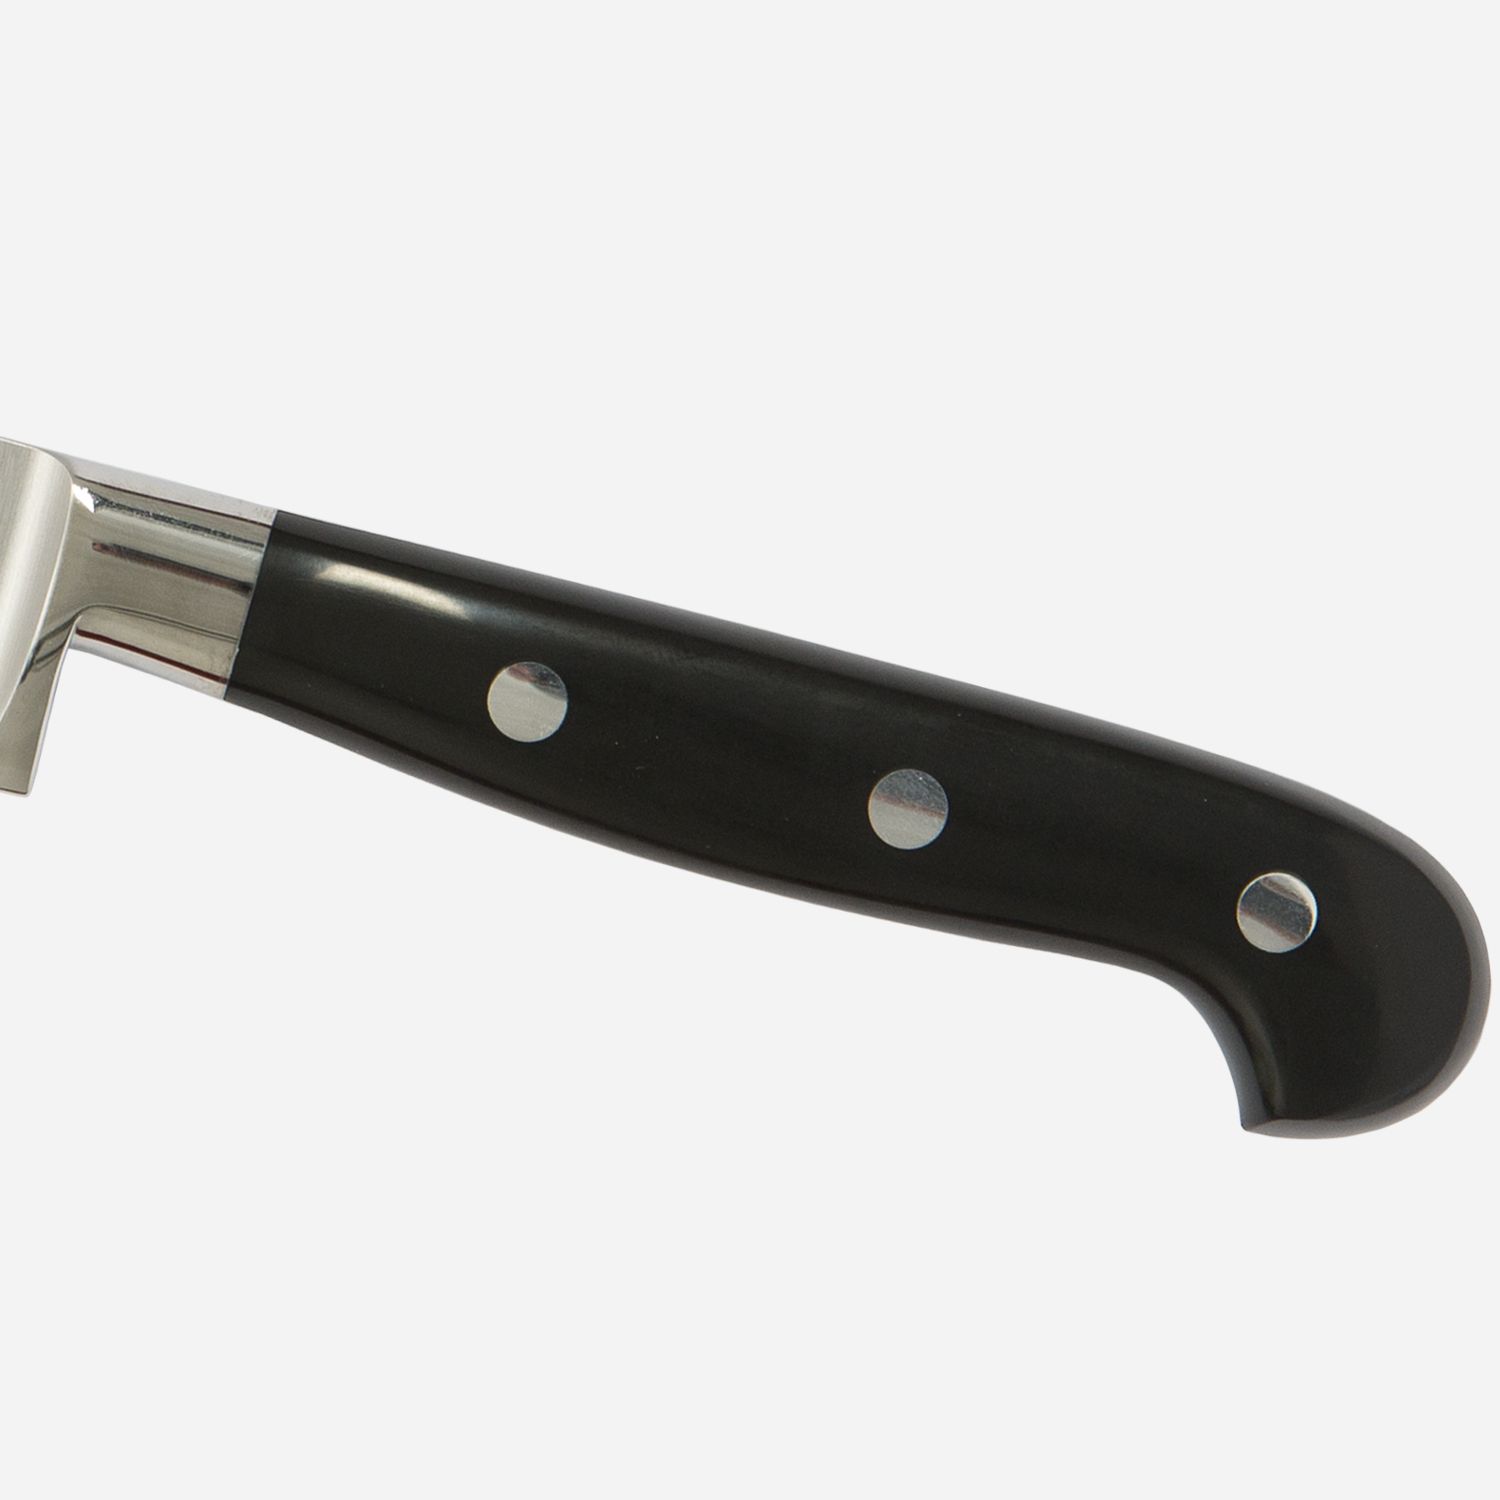 Santoku knife cm.18  Stainless Steel Berkel Adhoc Handle Glossy Black Resin